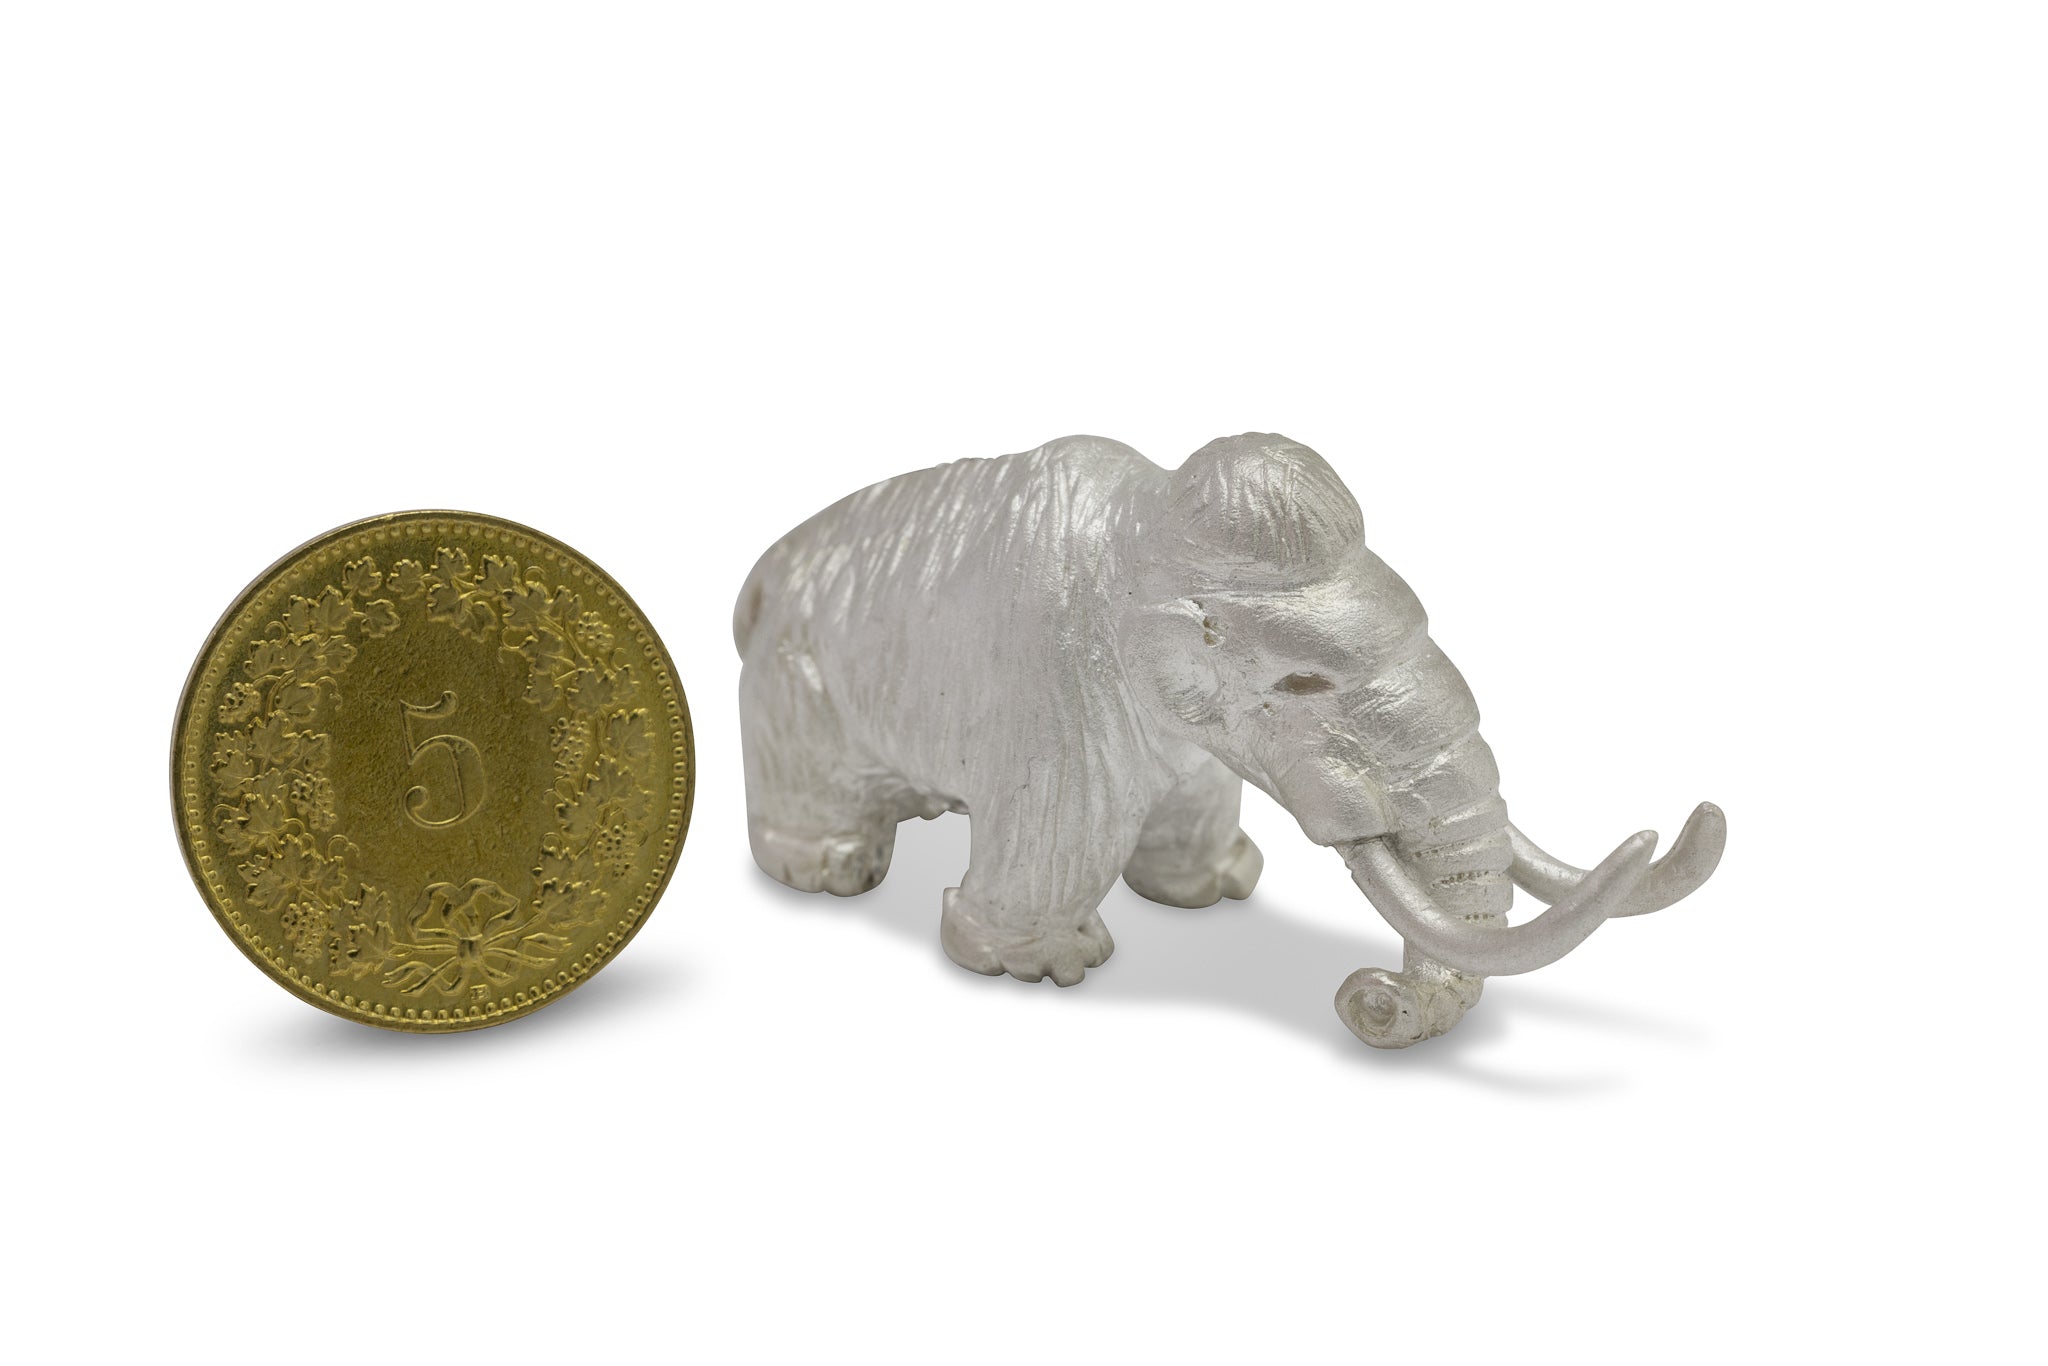 Winziges Mammut aus Silber, das neben 5 Rappen Stück der Schweiz steht. Sie sind nahezu gleich hoch.